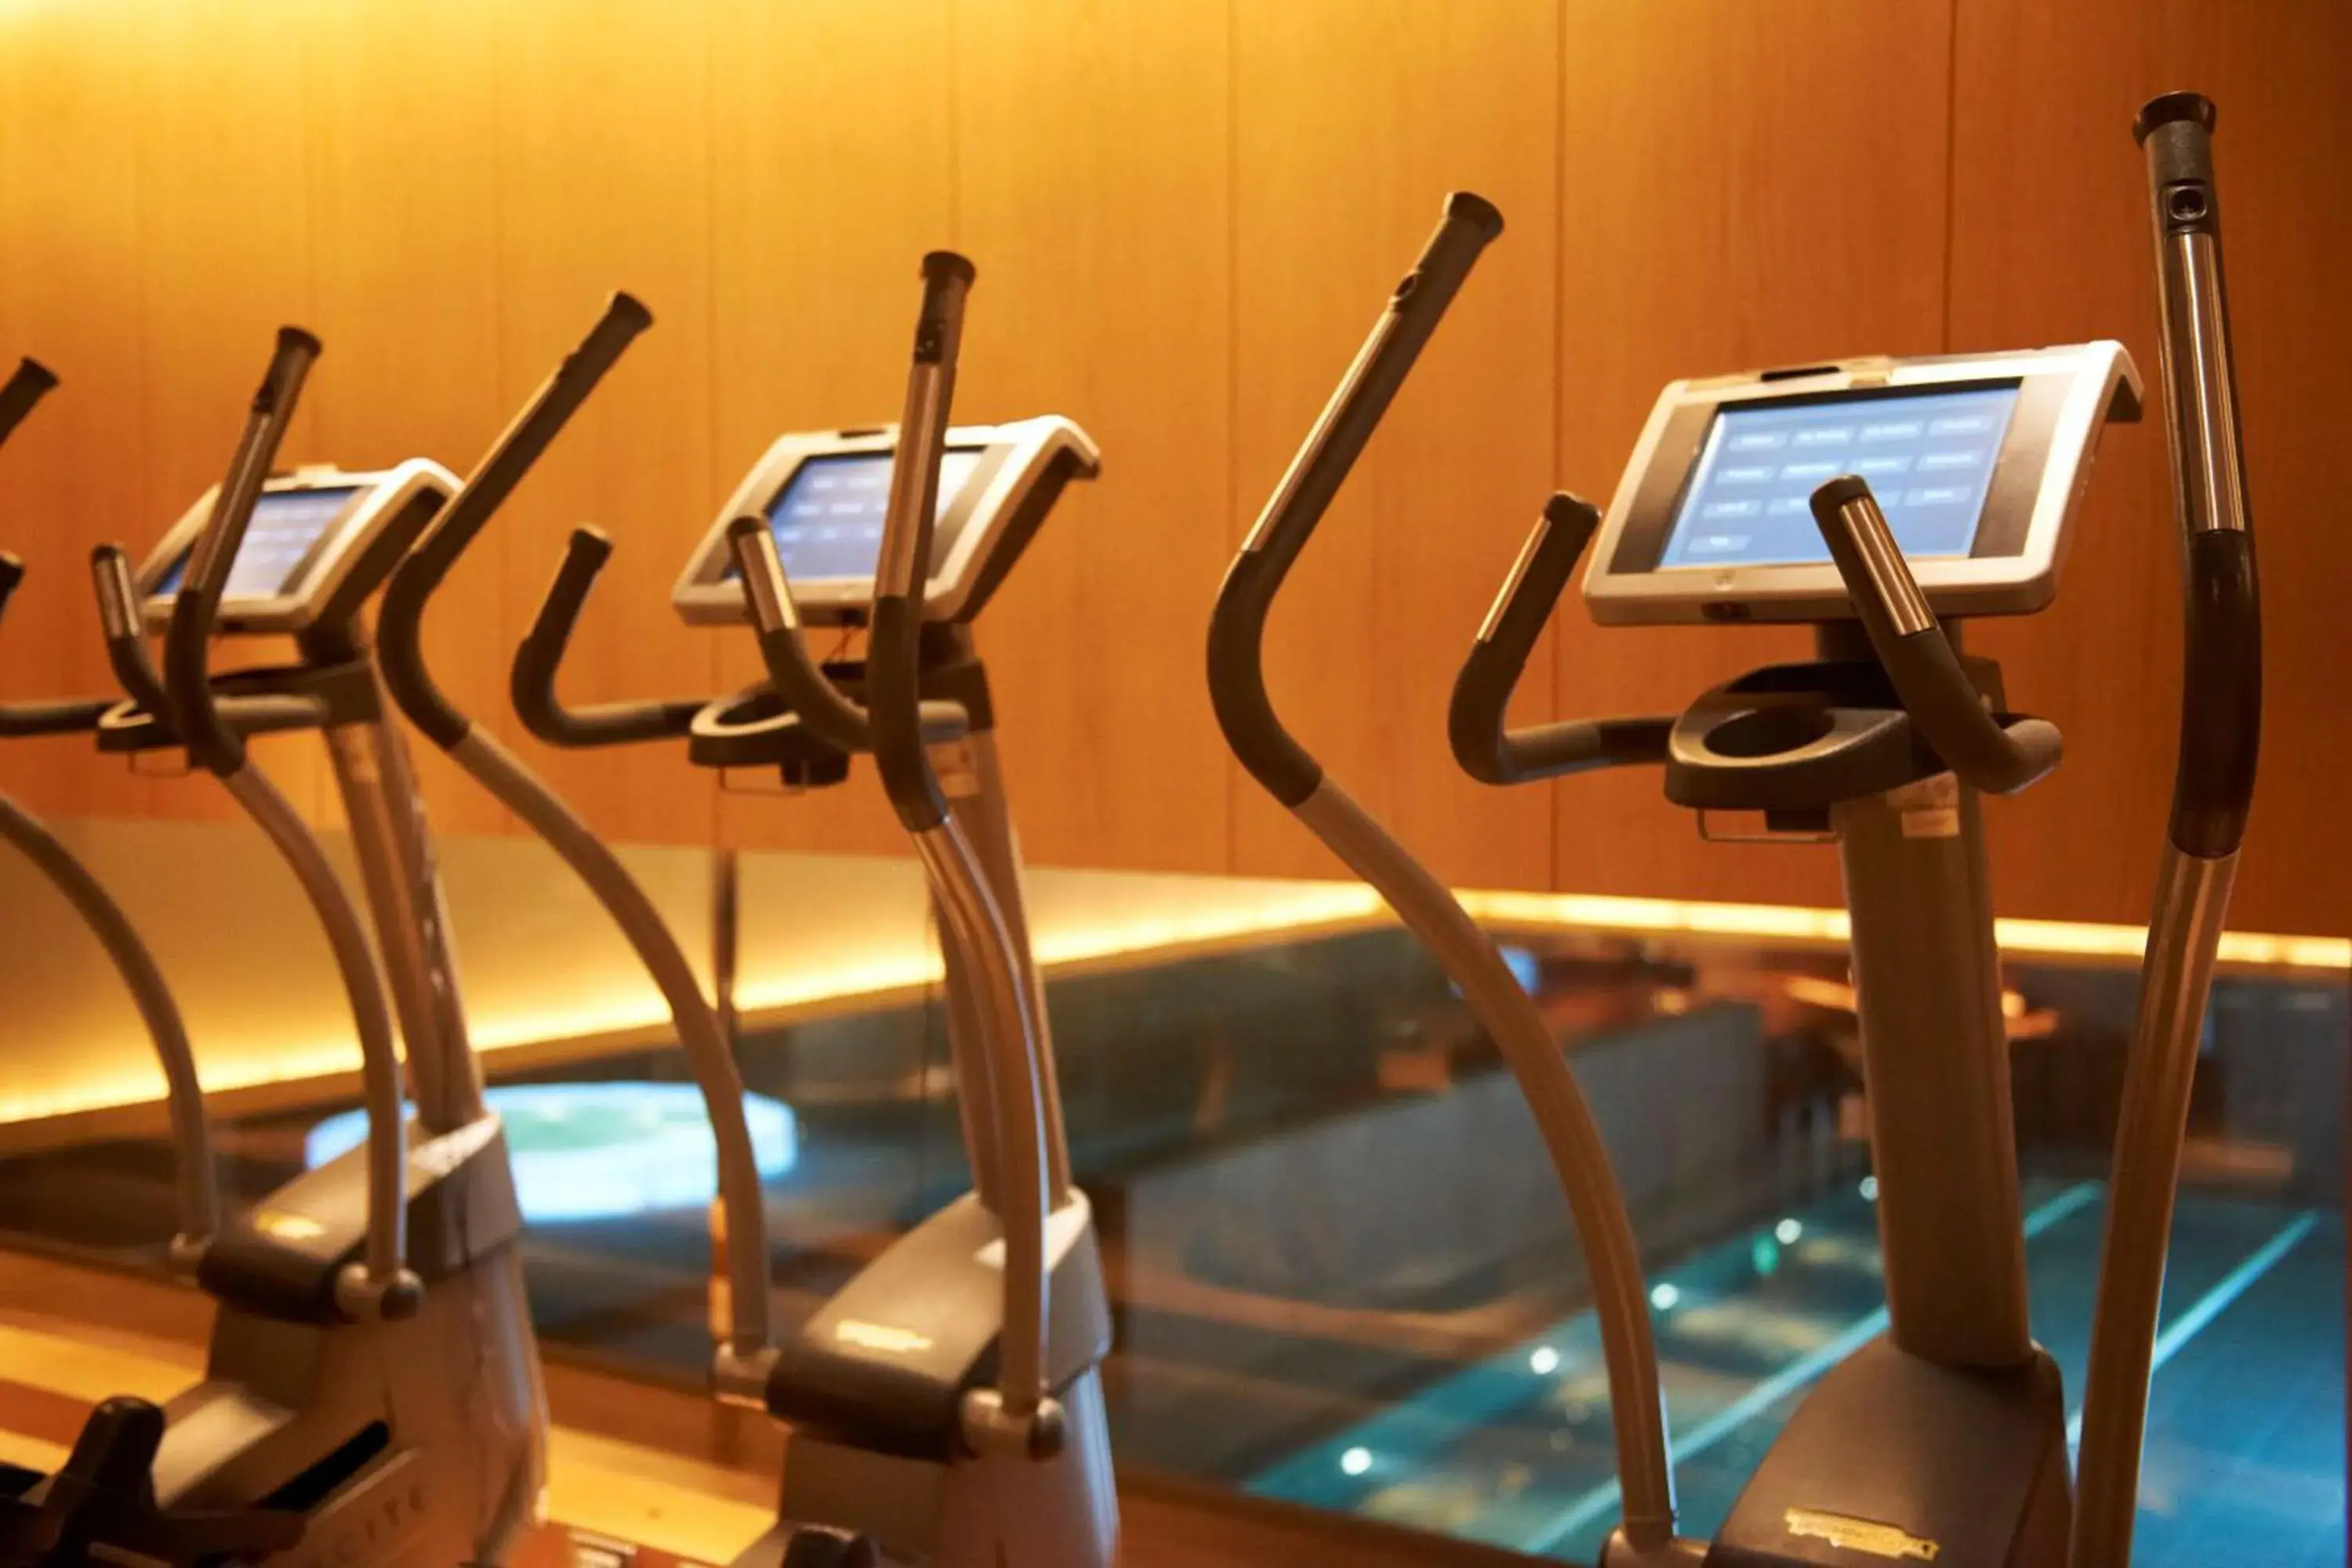 Fitness centre/facilities in Grand Hyatt Tokyo